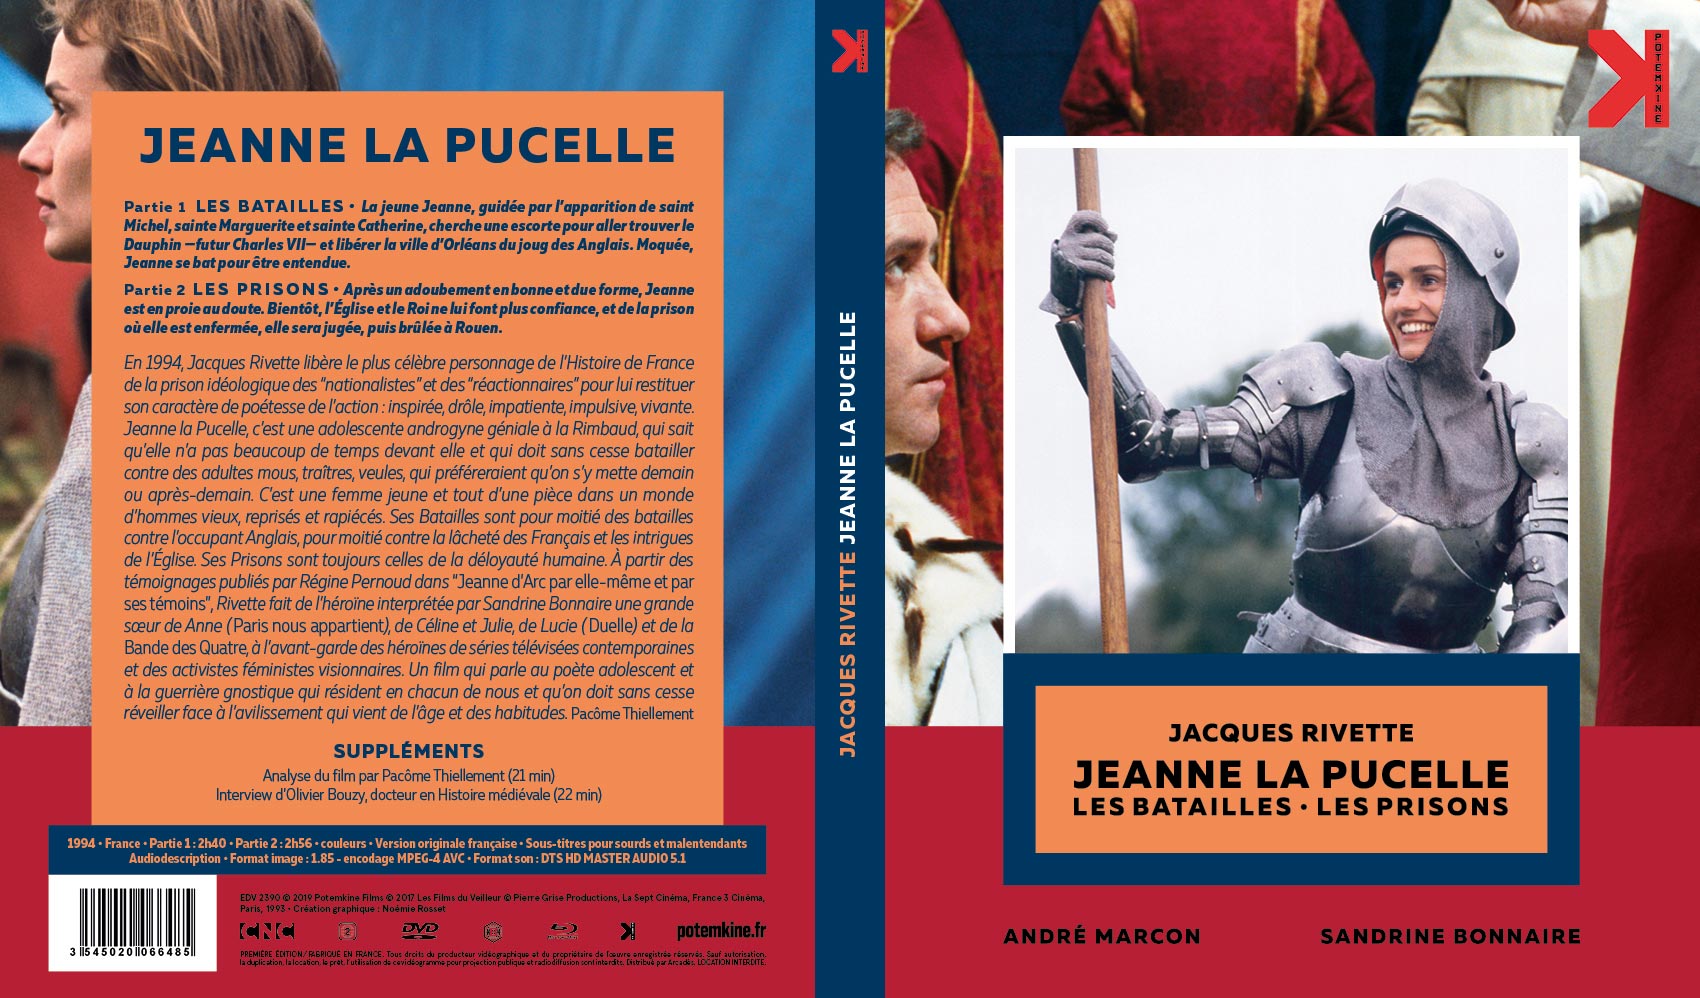 Jaquette DVD Jeanne la pucelle Les batailles + Les prisons custom